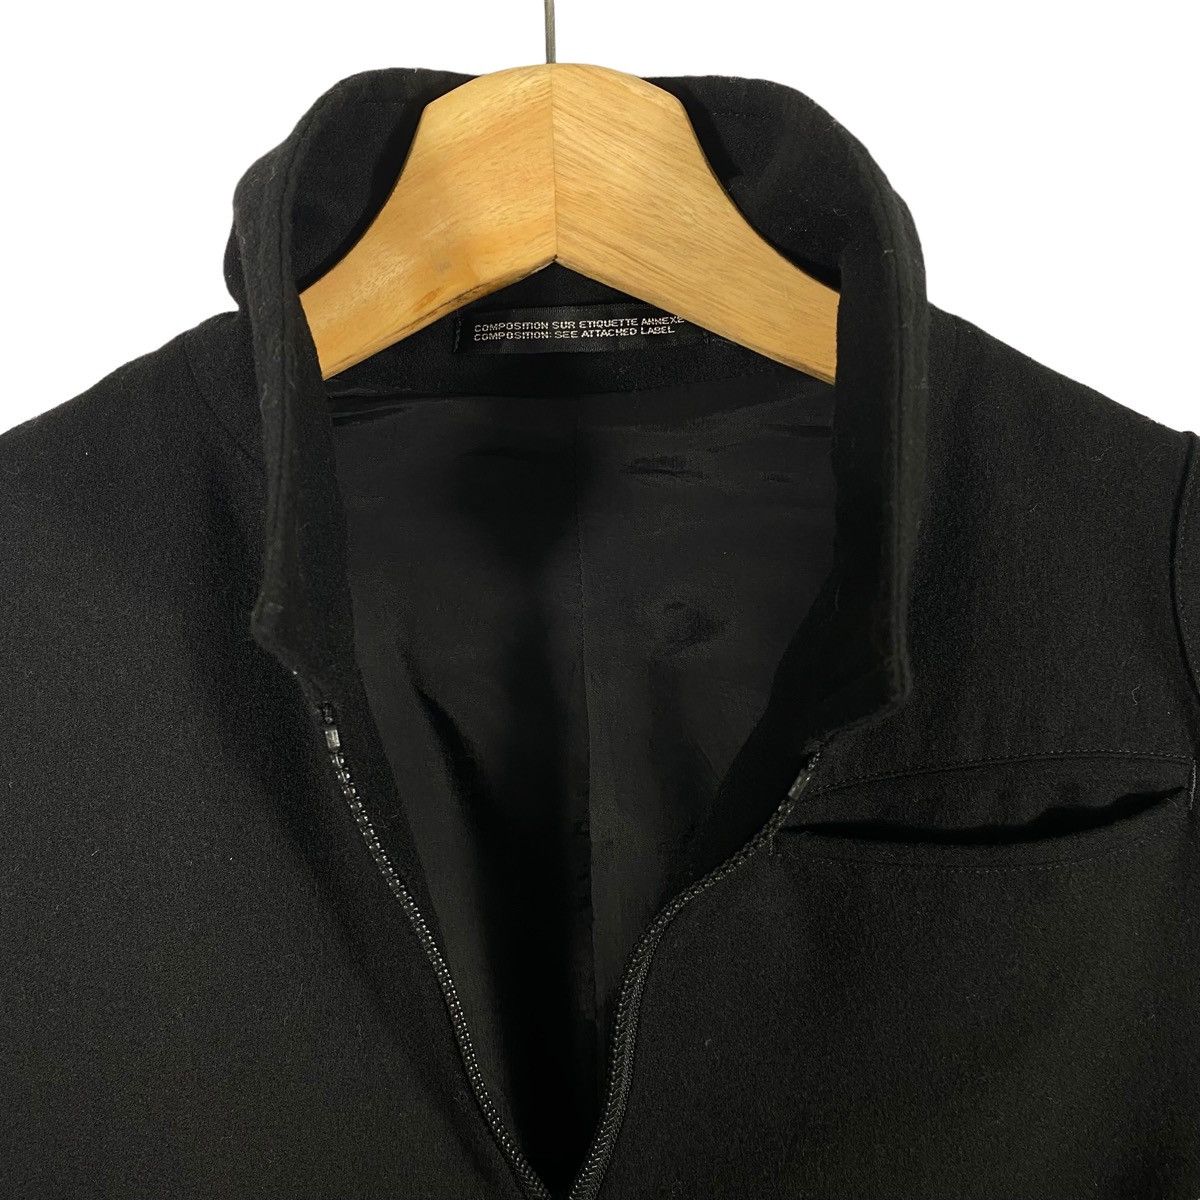 Vintage 90s Y's Yohji Yamamoto Wool Jacket Zipper Size 1 - 6